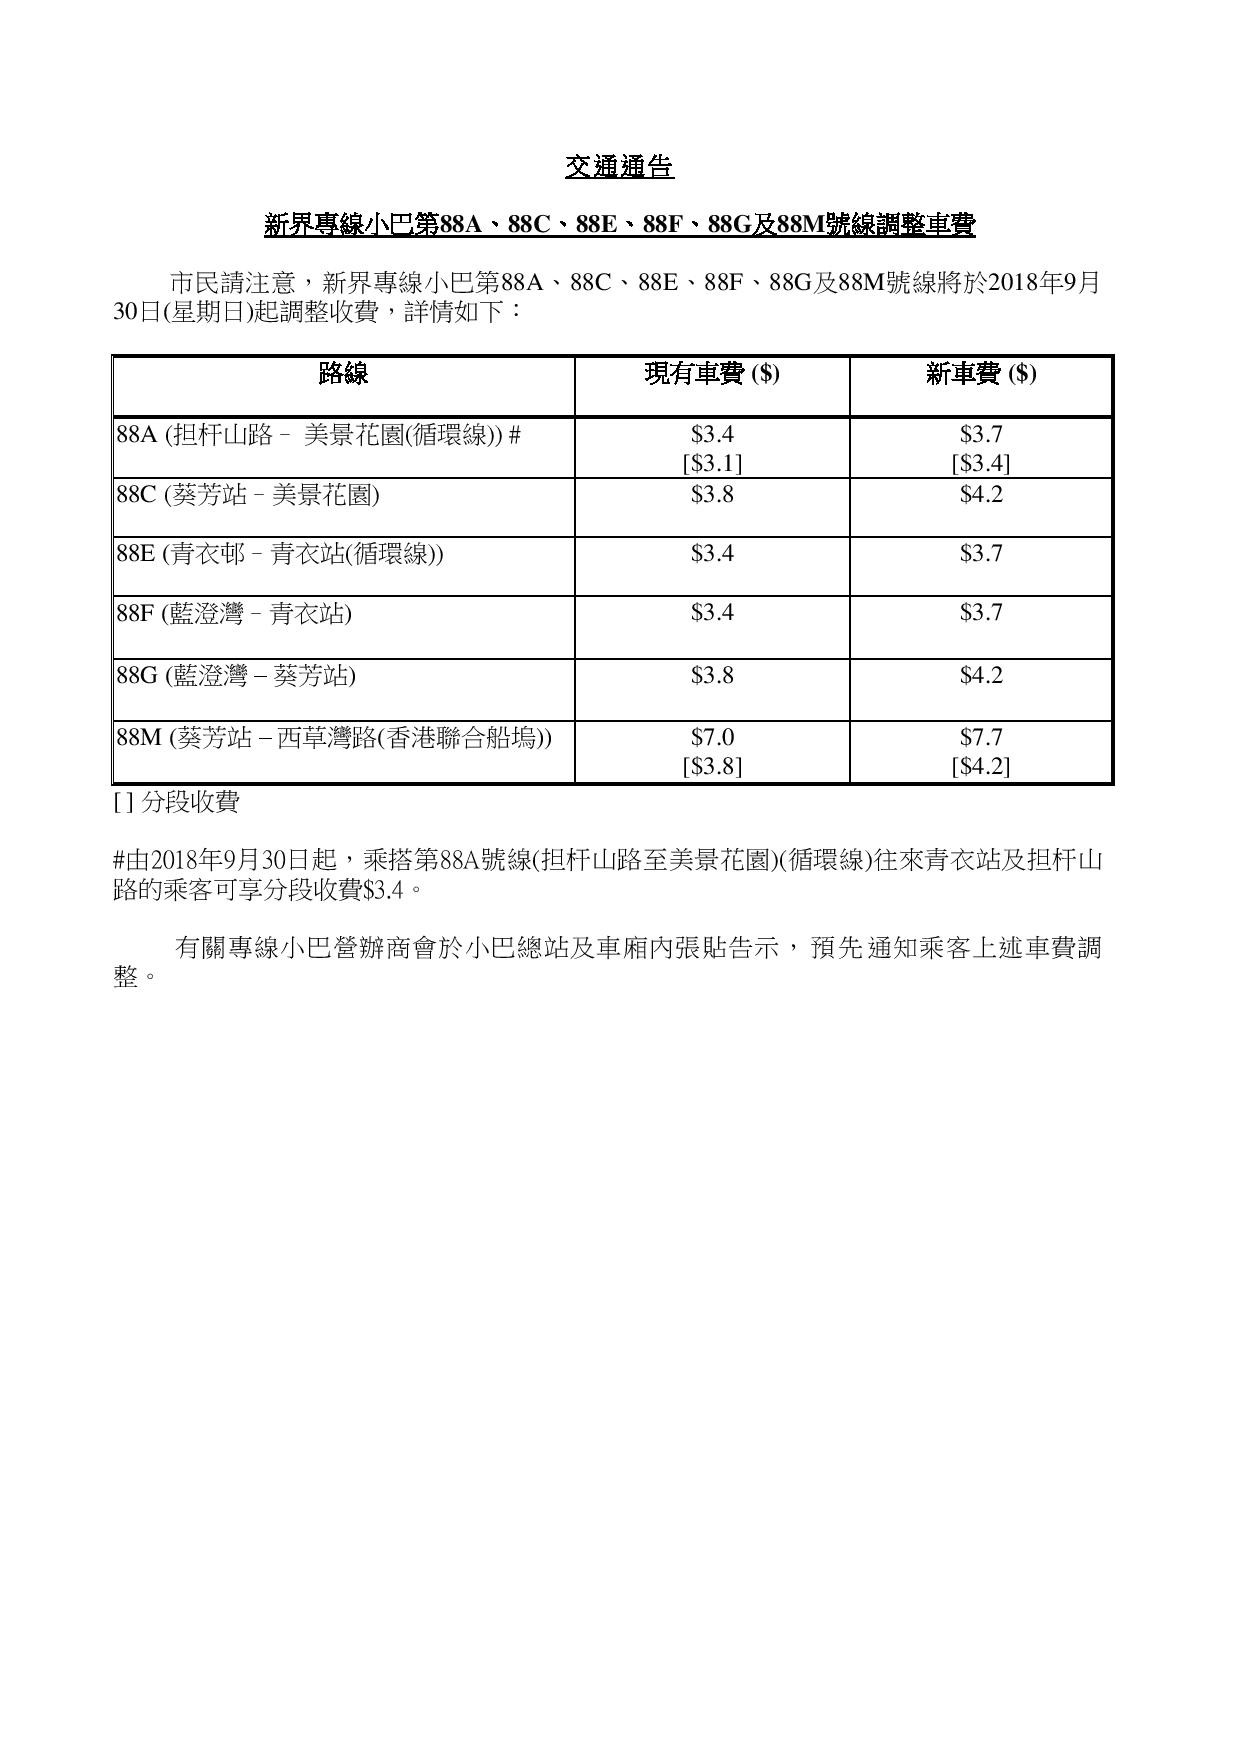 ta_88a, 88c, 88e &amp;88m_fare increase_20180930 (chi)-page-001.jpg